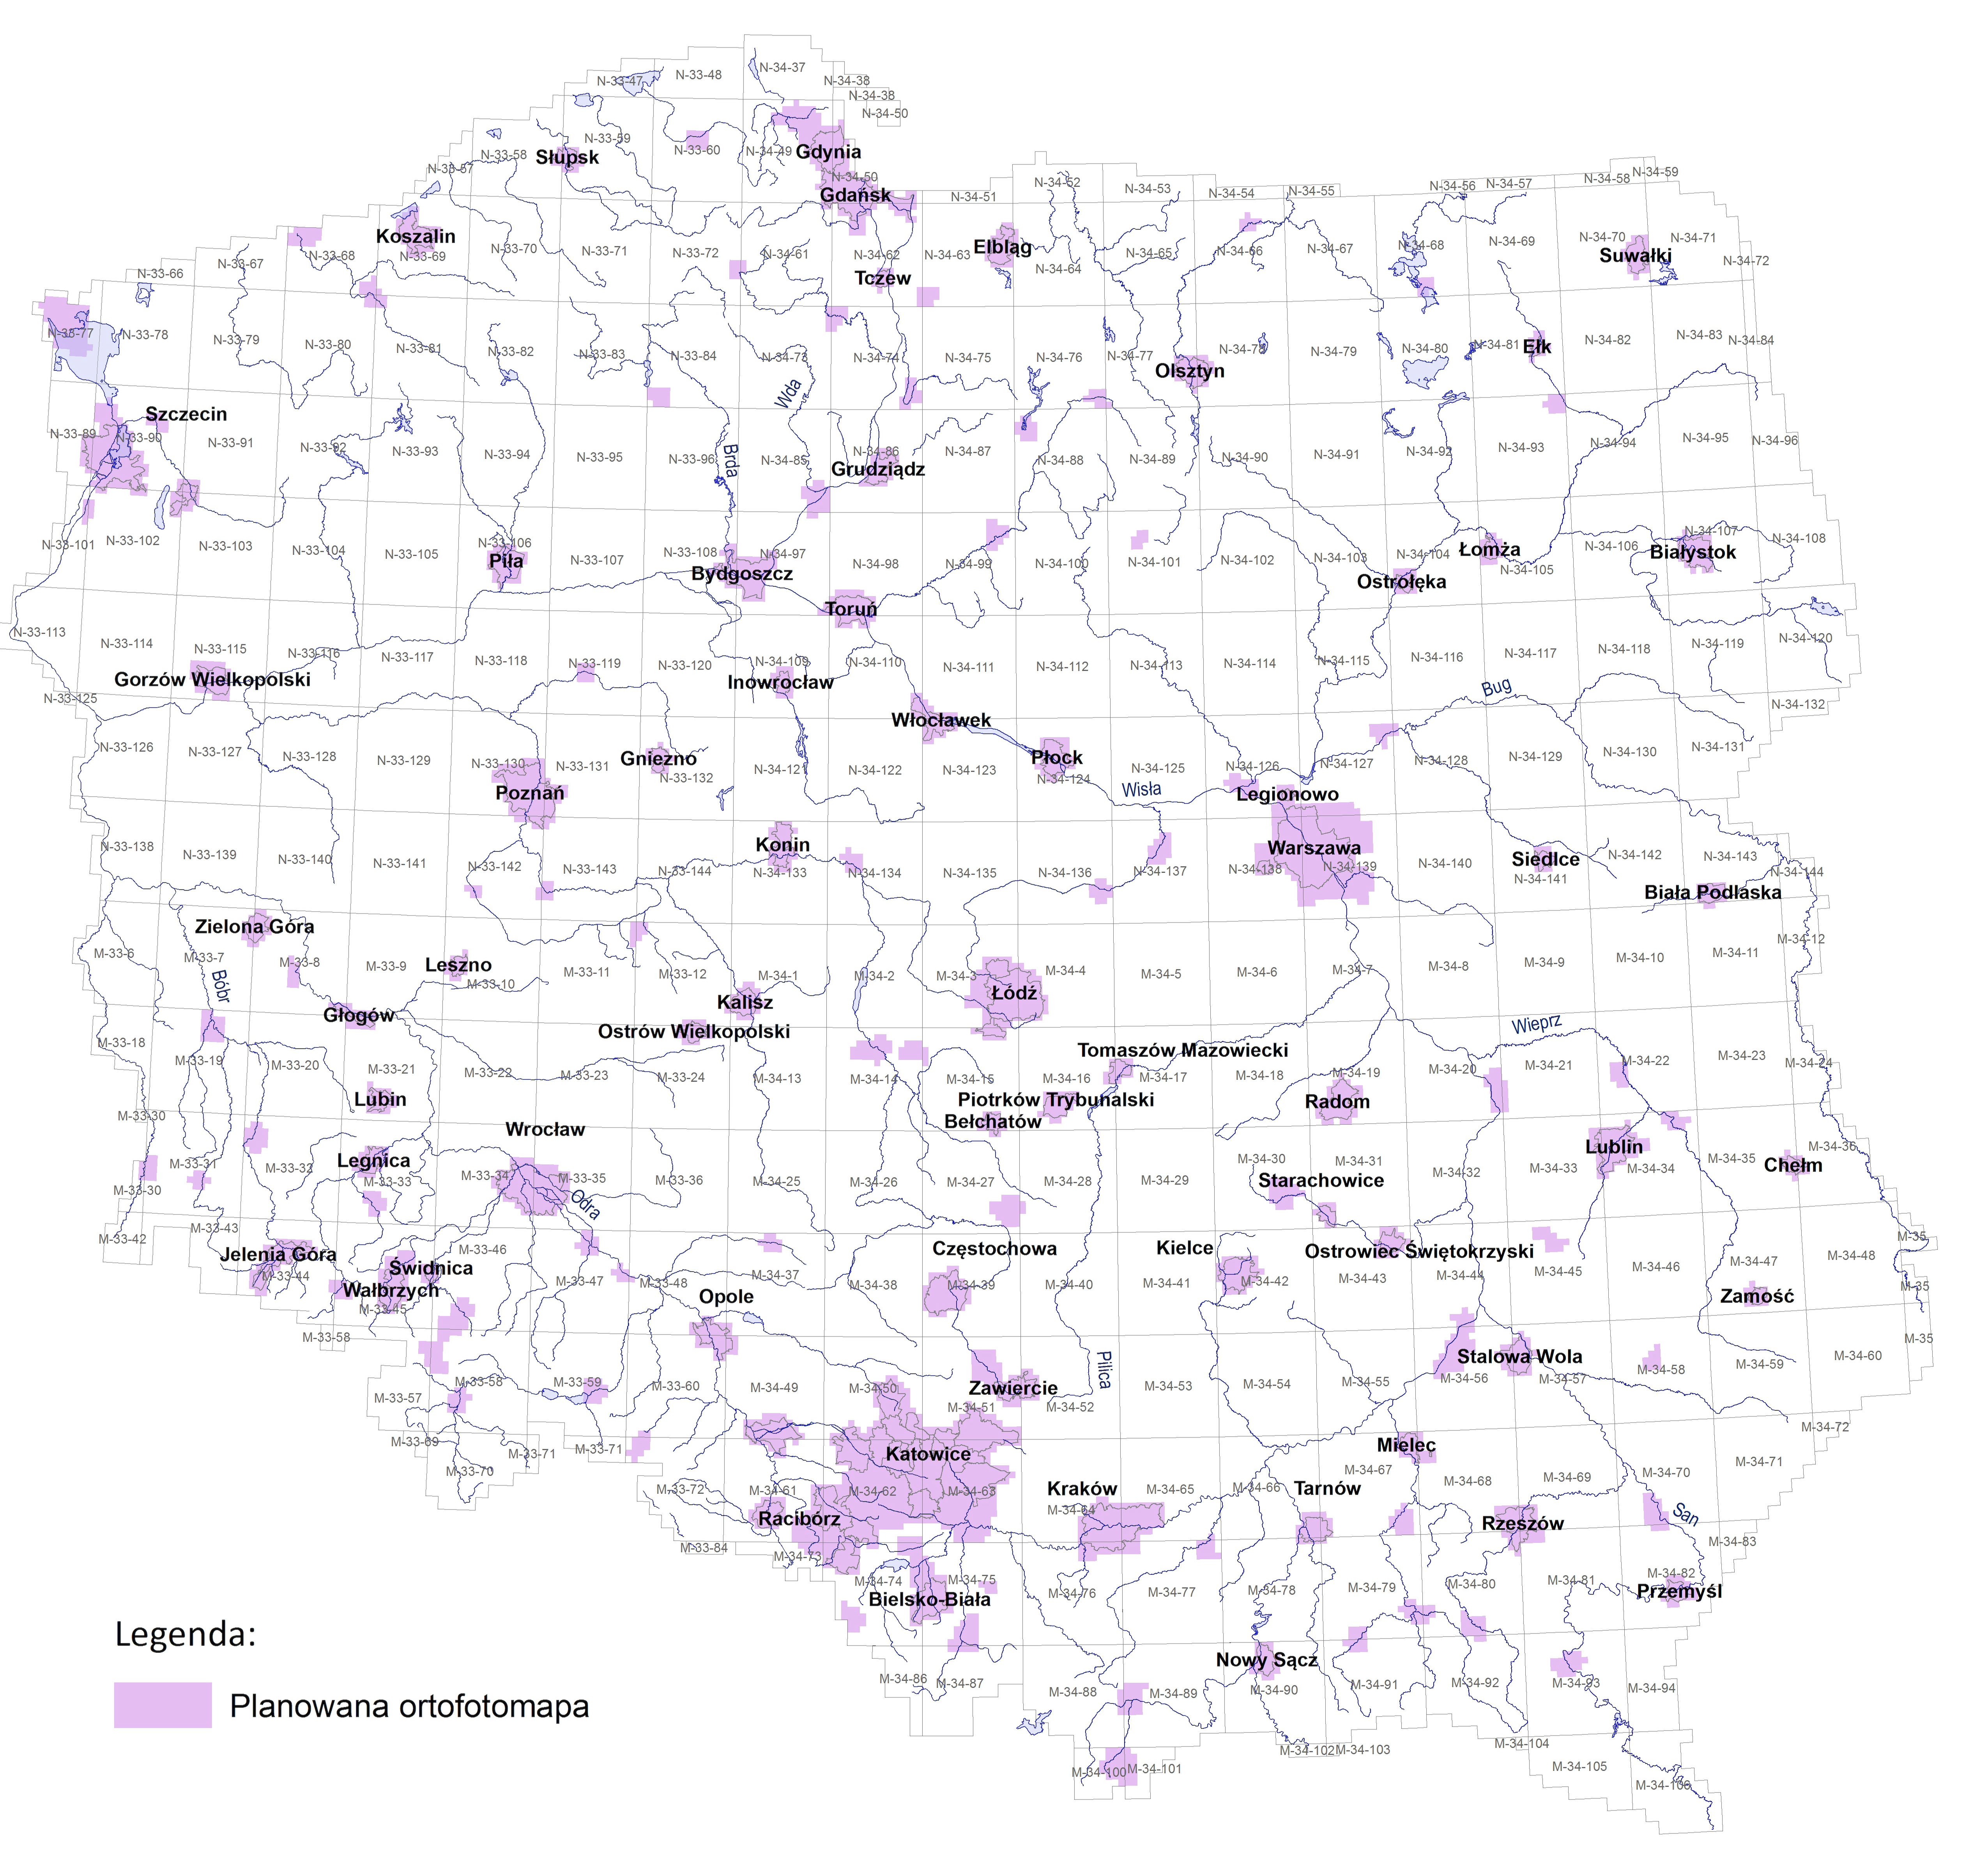 Mapa Polski przedsatwiająca zasięg ortofotomap wtykonanych w ramach projektu ISOK i GBDOT. Zaznaczenie kolorem fioletowym.